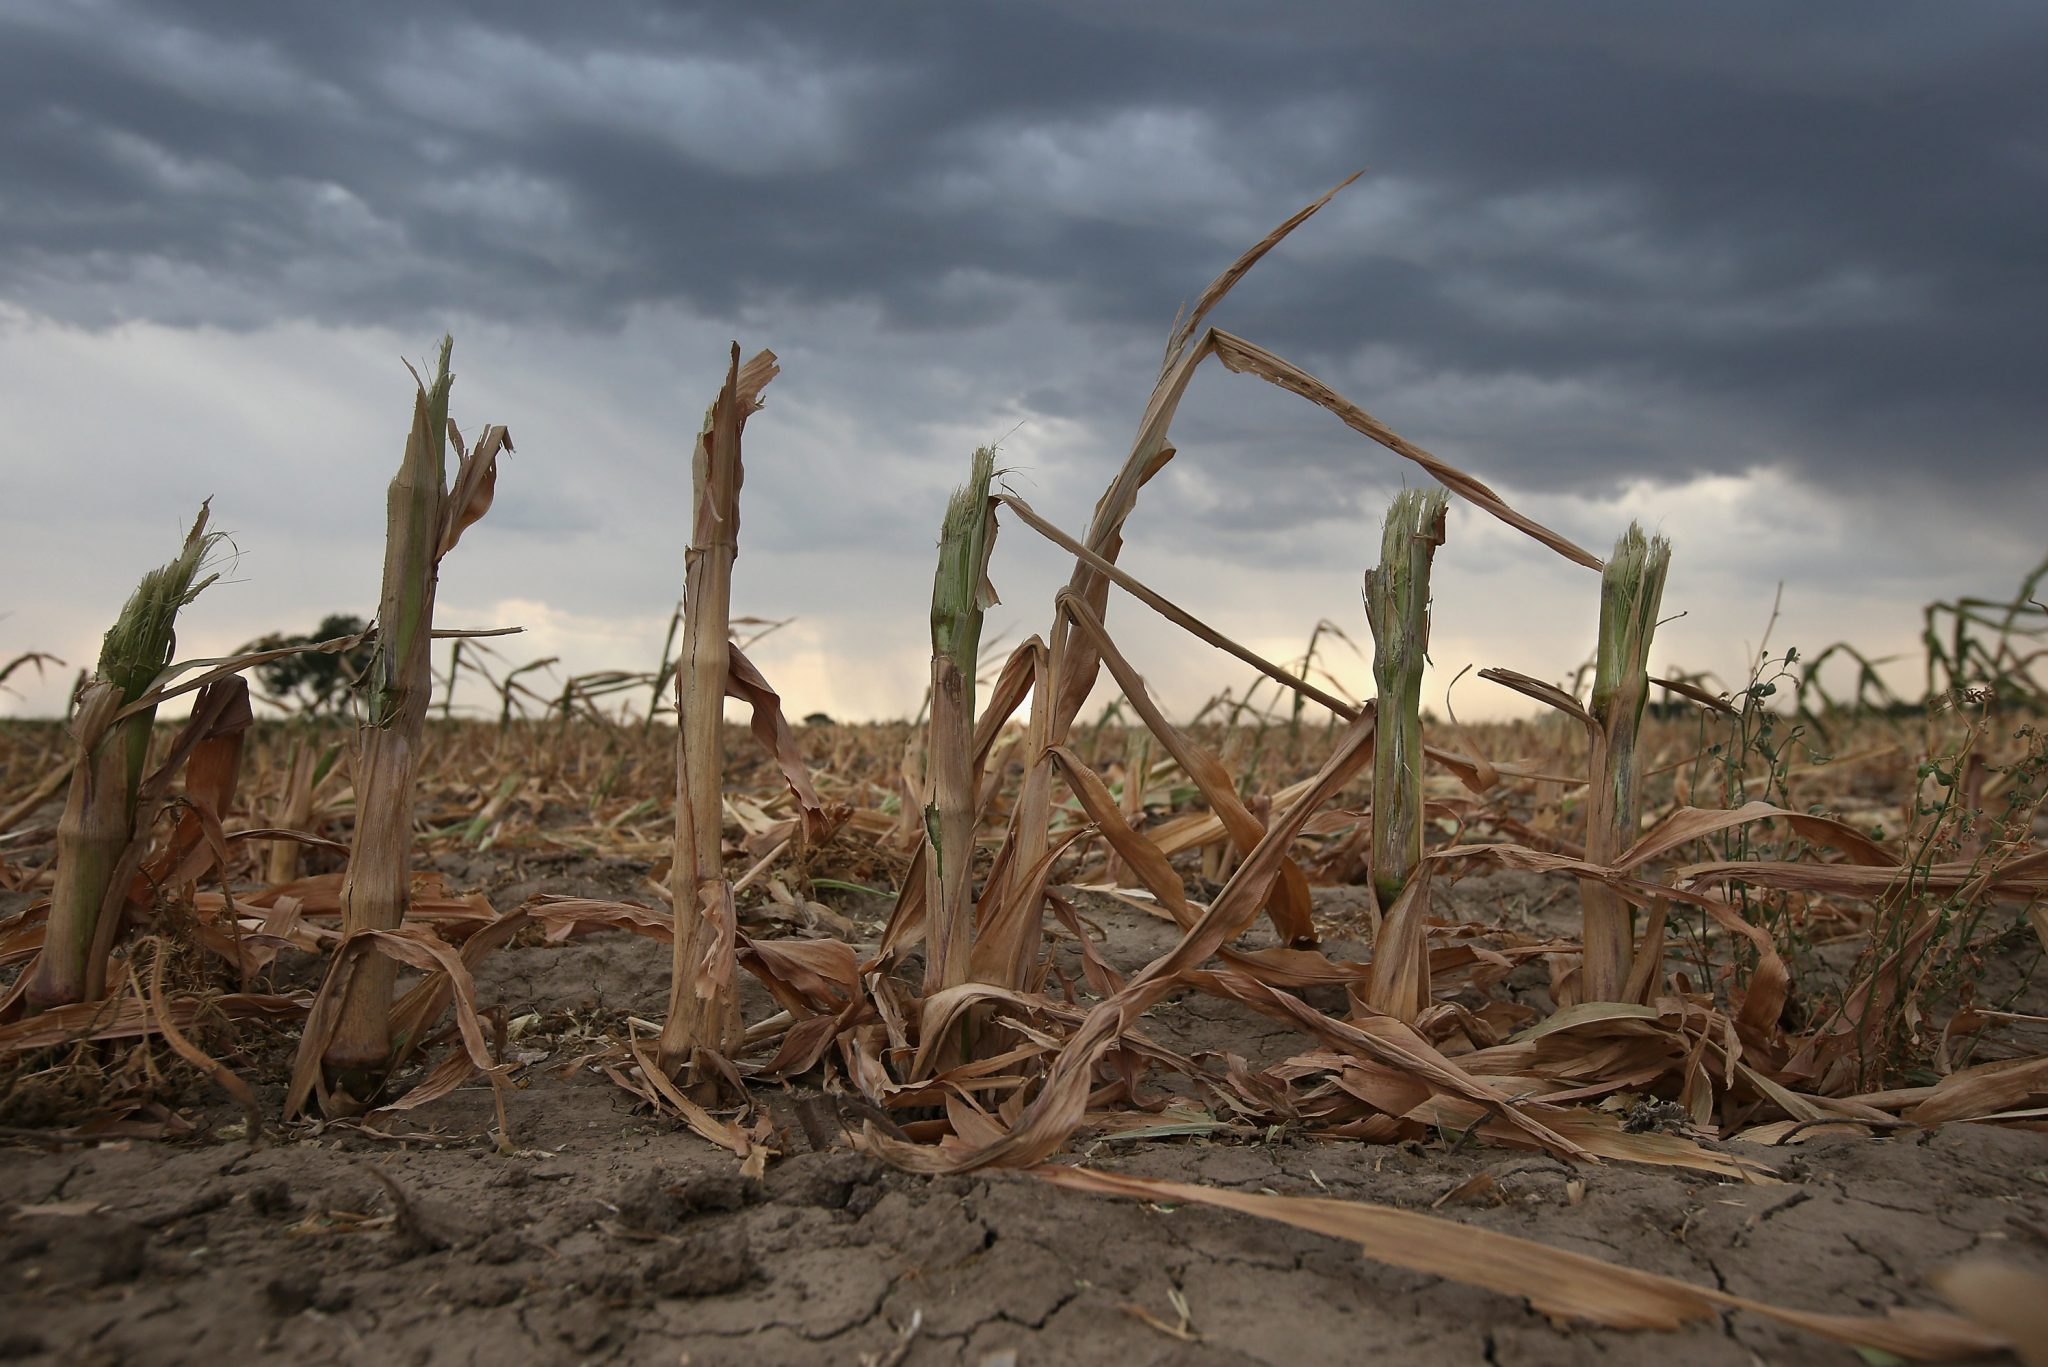 La sequía en Argentina afecta a más de la mitad del territorio y se esperan pérdidas millonarias